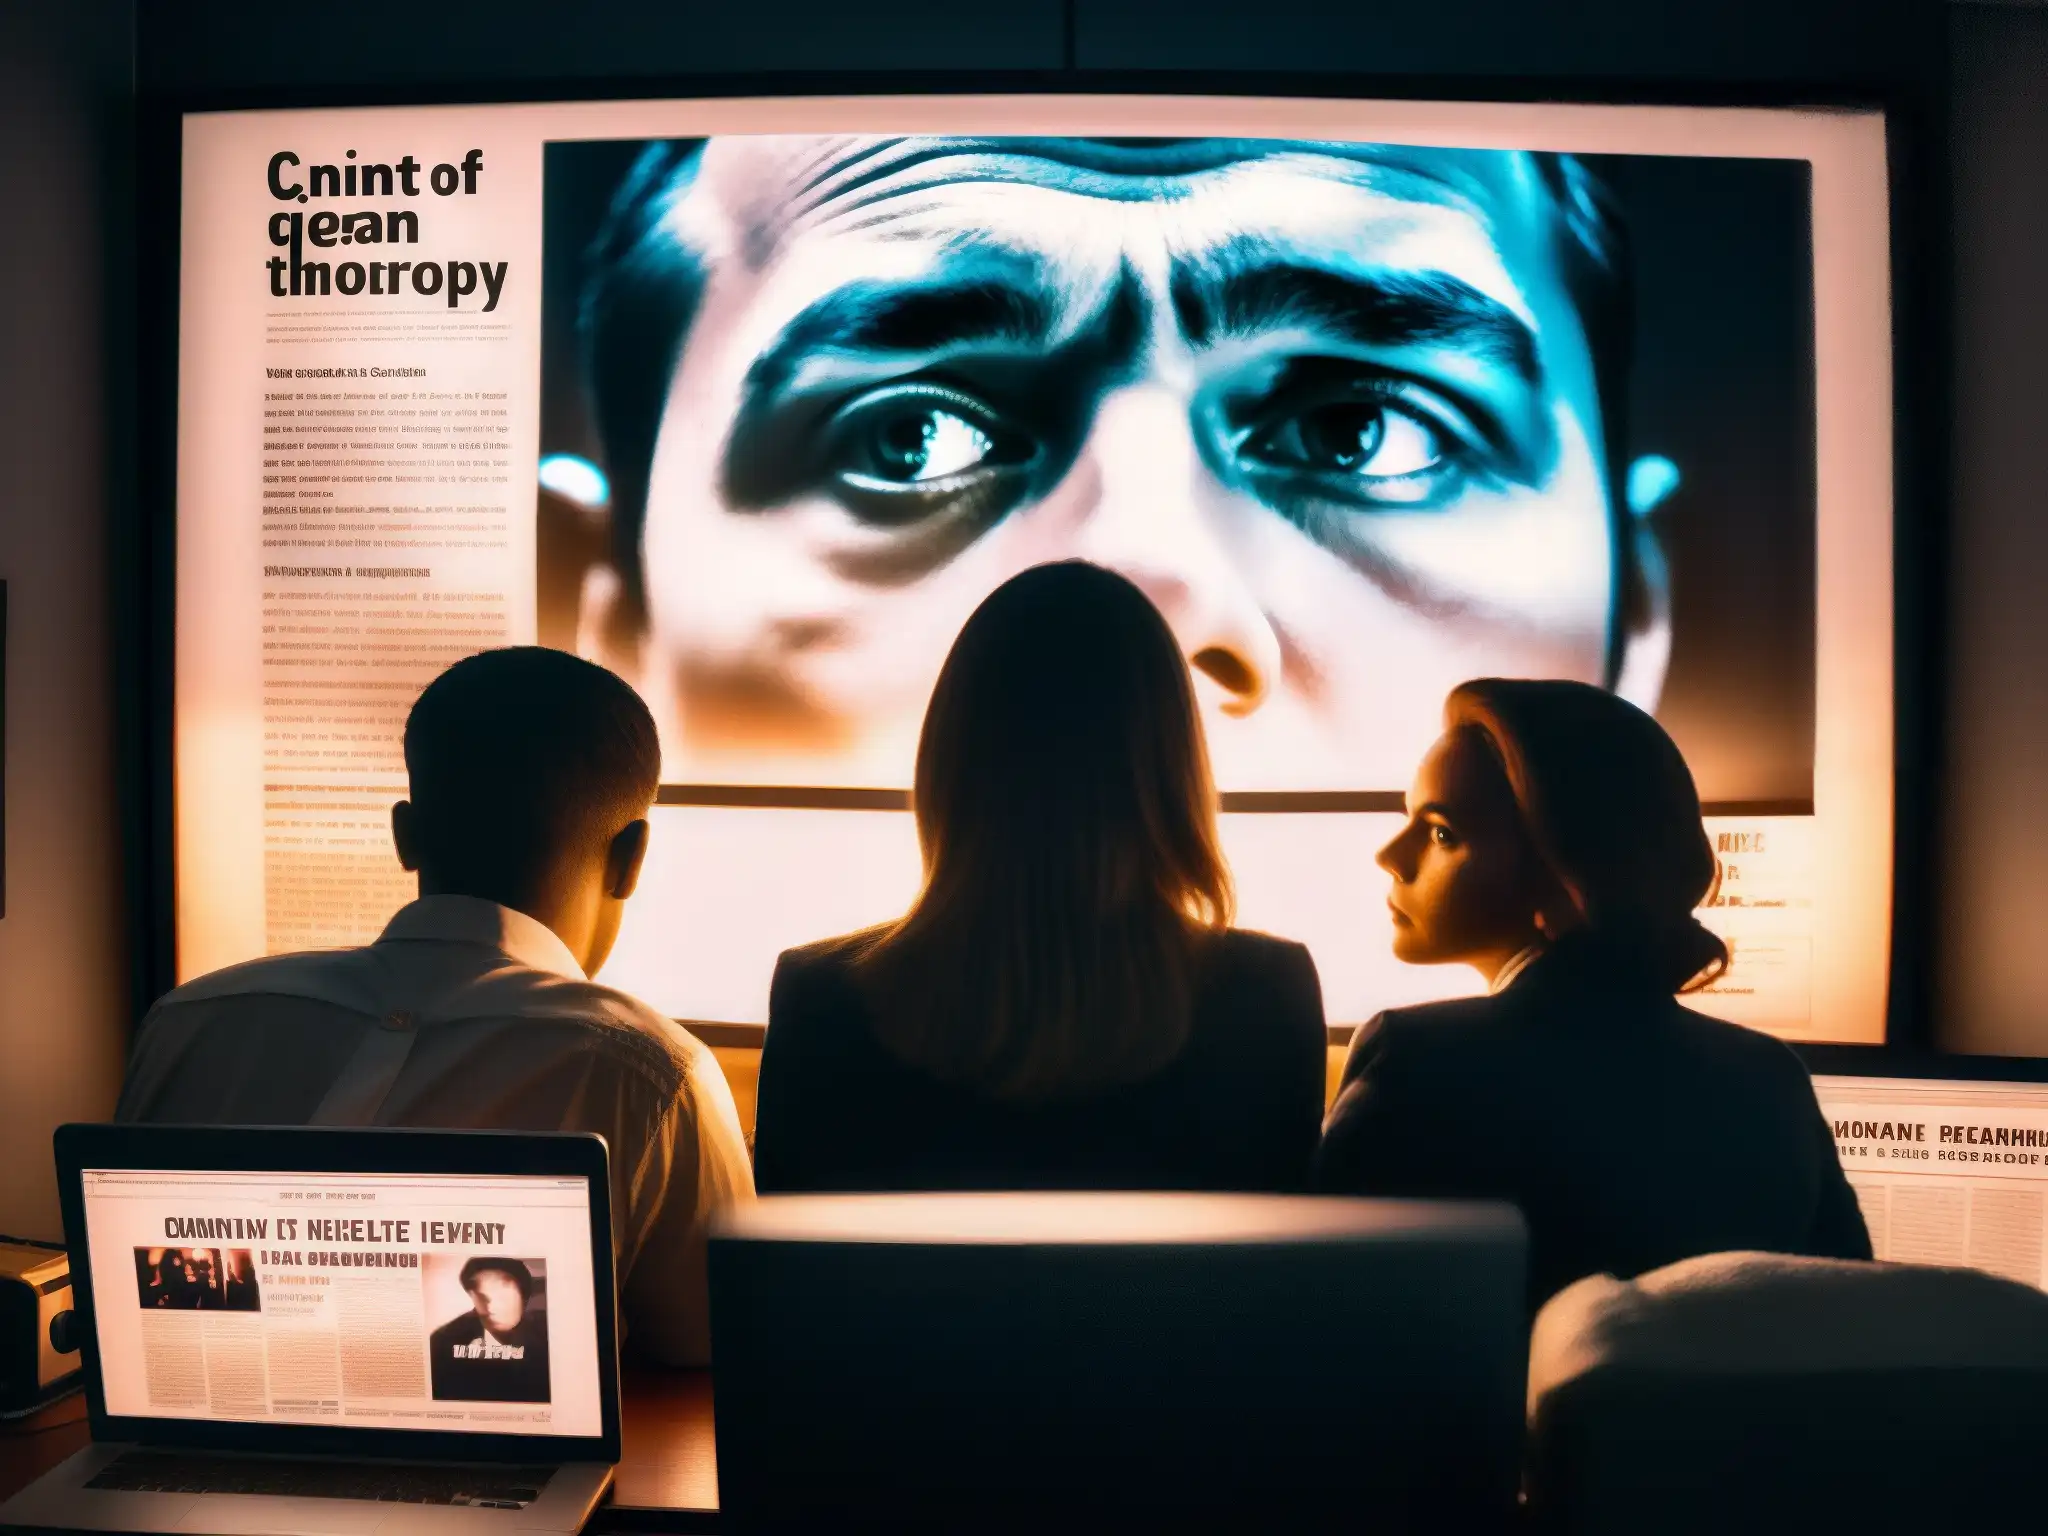 Un grupo en penumbra observa con inquietud una pantalla de ordenador en una habitación oscura llena de teorías de conspiración